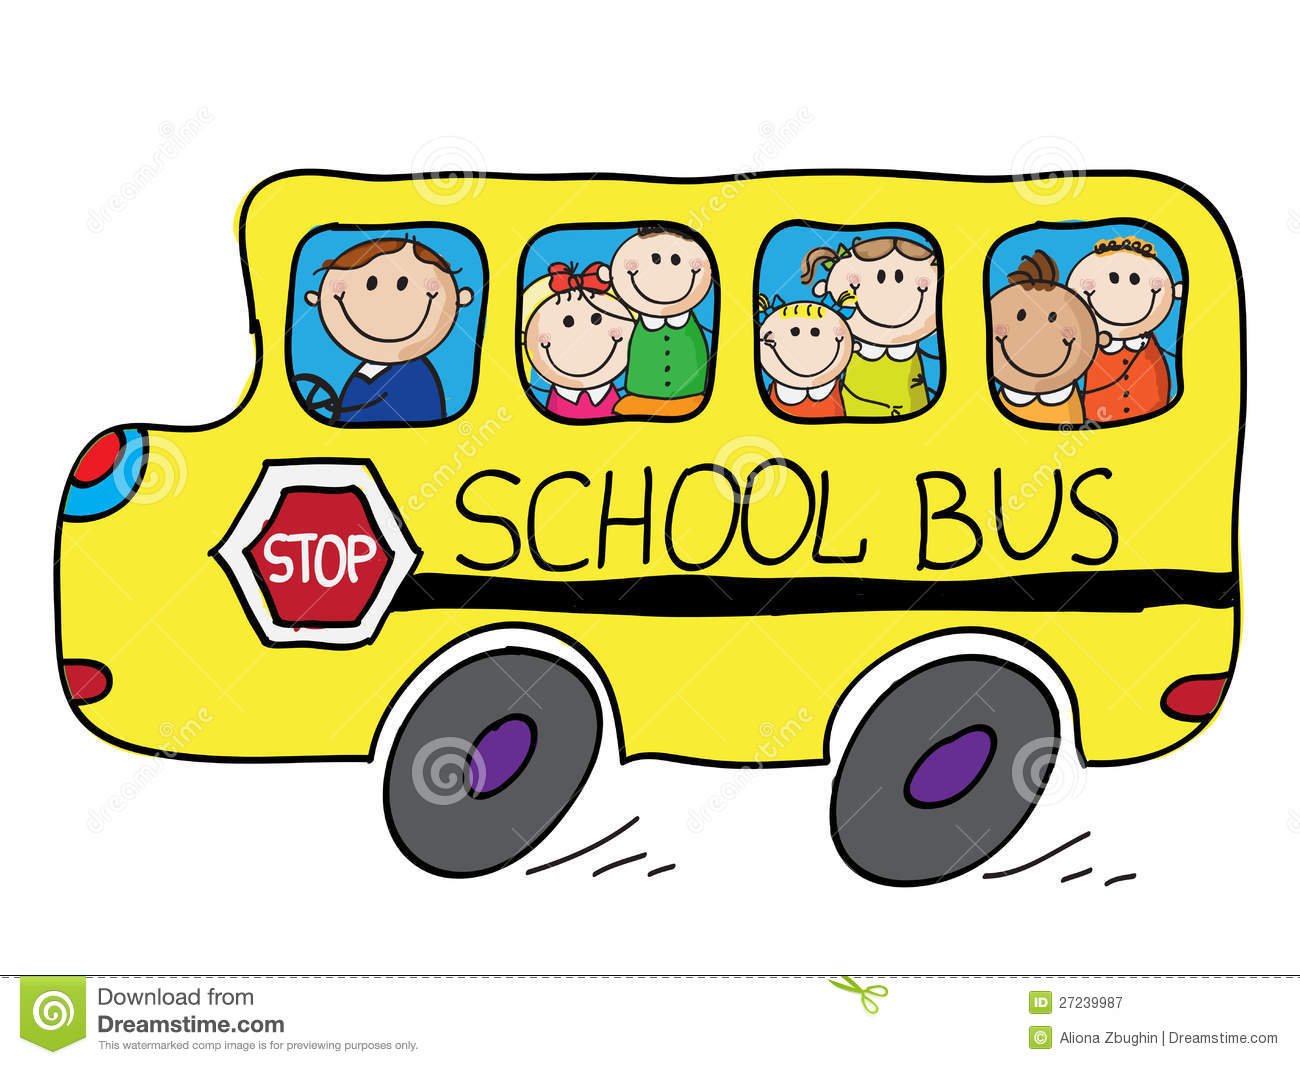 School bus clipart image. dac8e21b71998a1a2ee4e75c5ee9b4 .